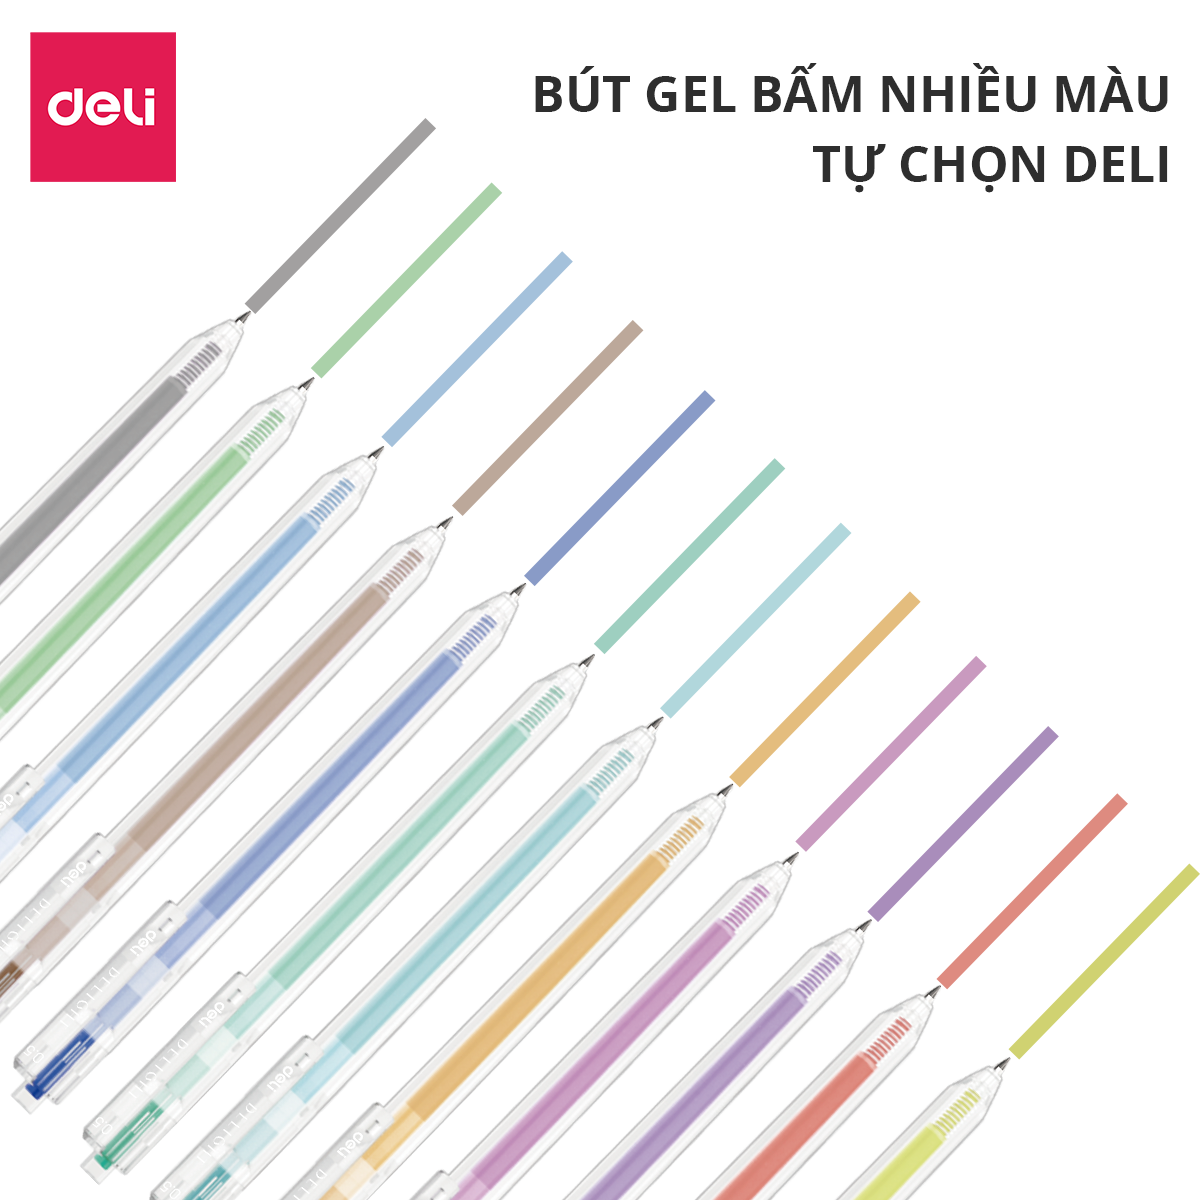 Bút gel bấm 0.5mm nhiều màu Deli - 1 chiếc - độ dài mực lên tới 1000m Đen/Nâu/ Đỏ/ Xanh Dương/ Xanh Lá/ Tím/ Cam - EG118